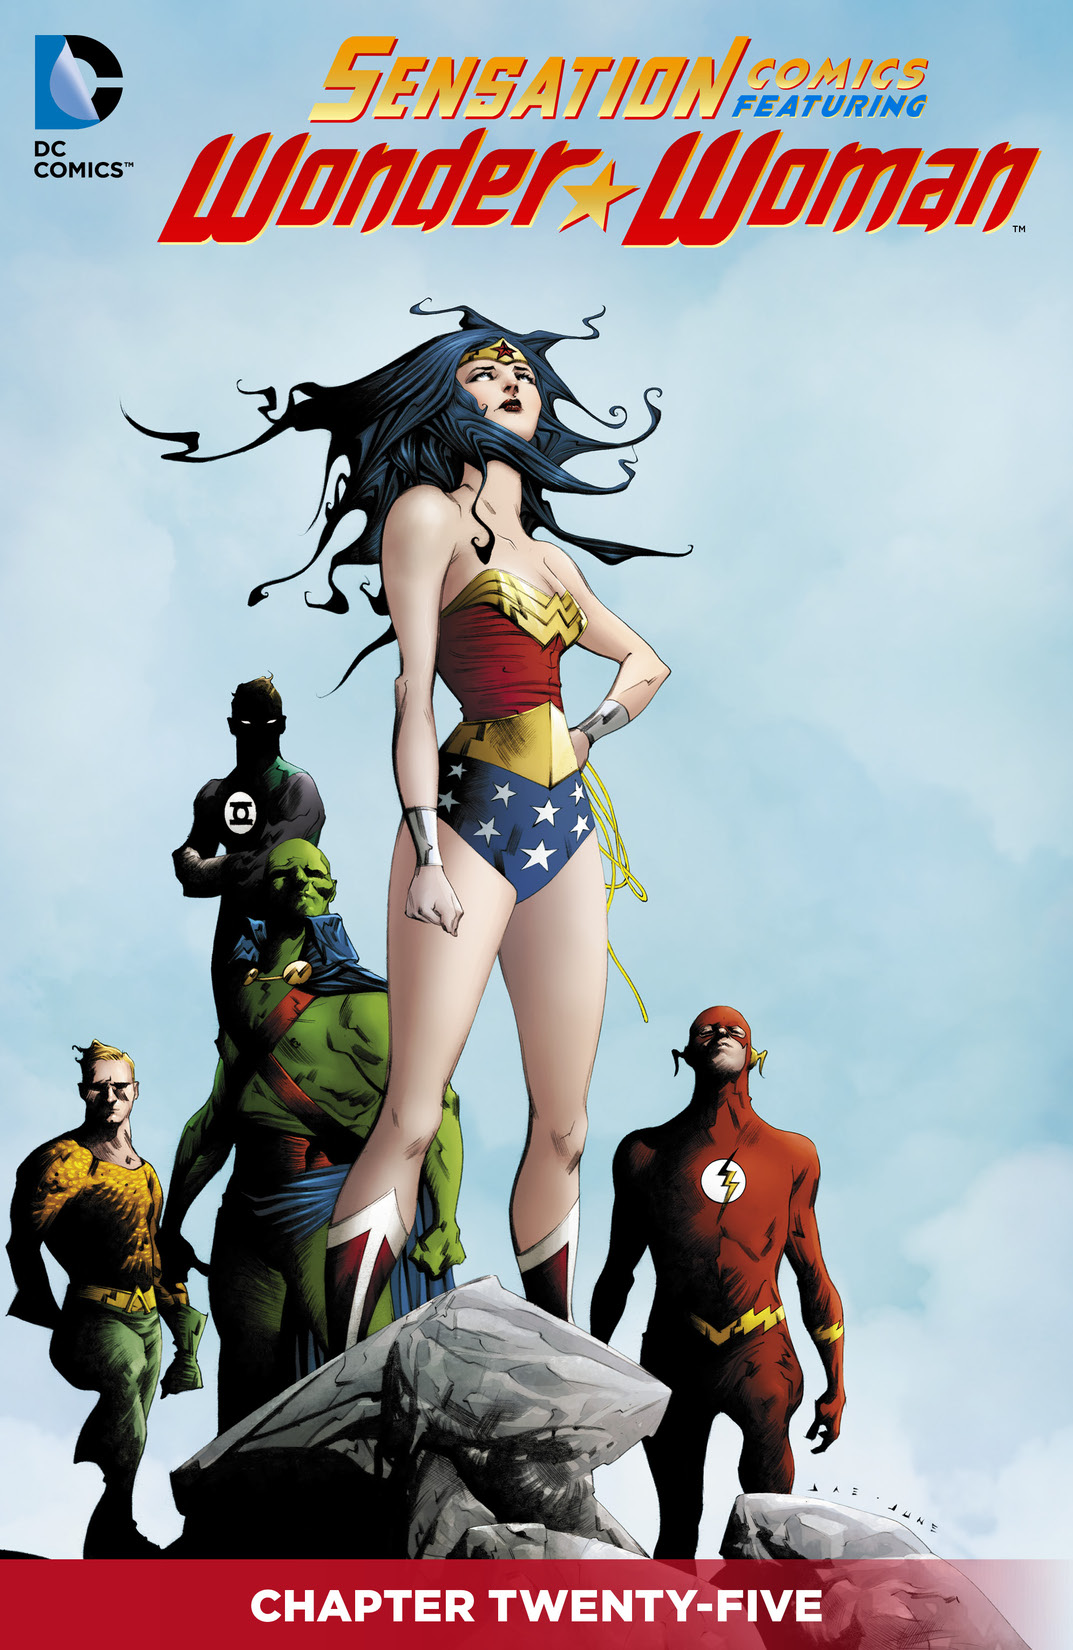 Sensation Comics Featuring Wonder Woman #25 preview images